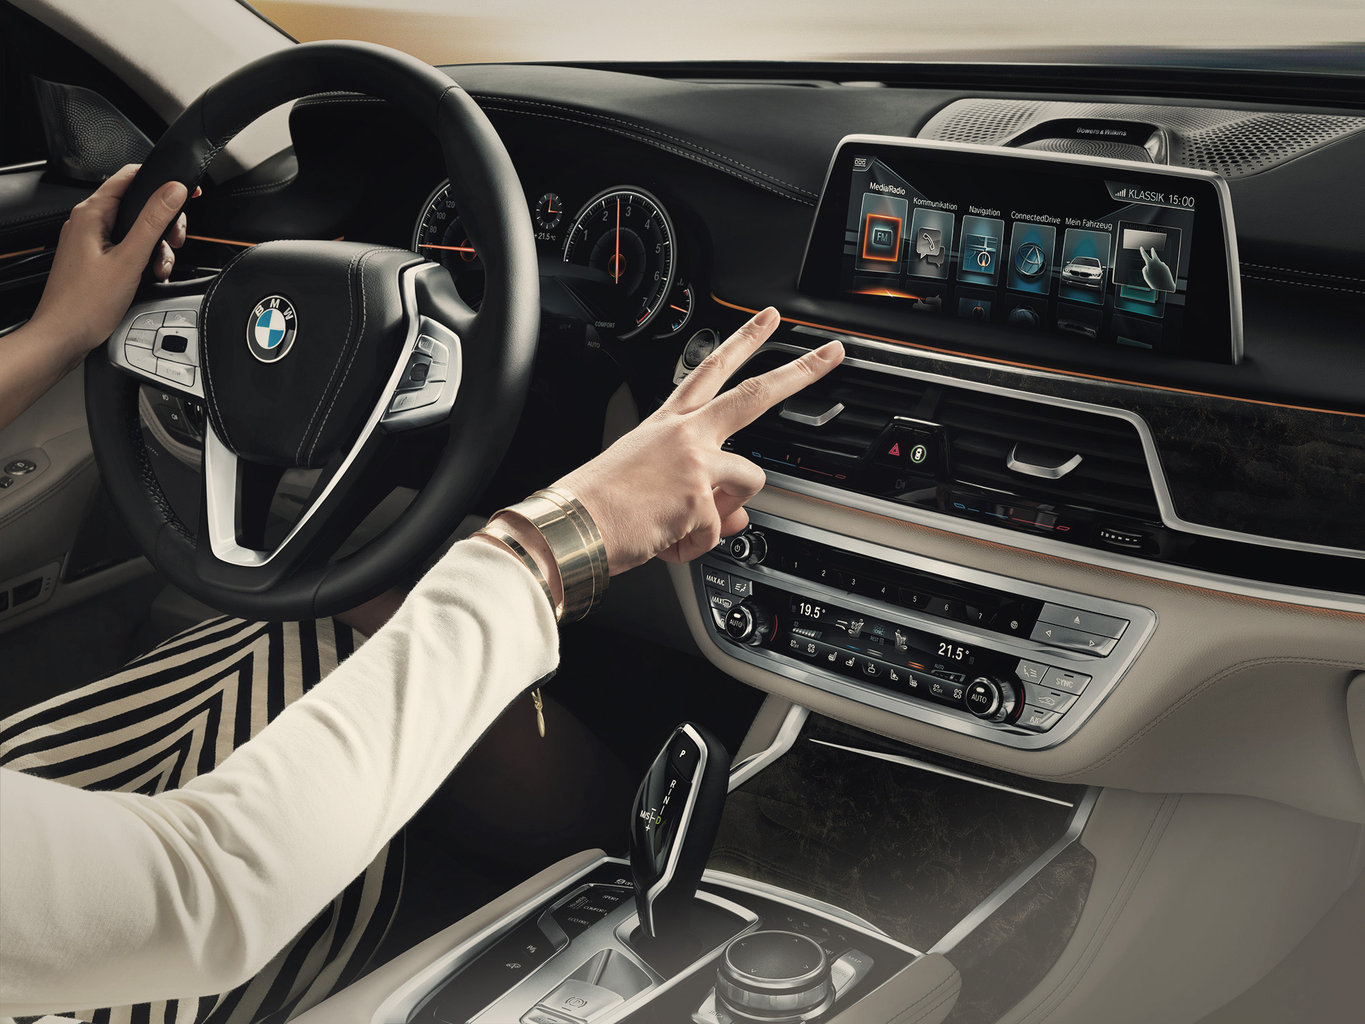 Dans ses derniers modèles, BMW permet au conducteur d'utiliser 5 commandes gestuelles reconnues par caméra. Le projet H2020 Silense veut aller plus loin, en se basant sur une technologie ultrason.